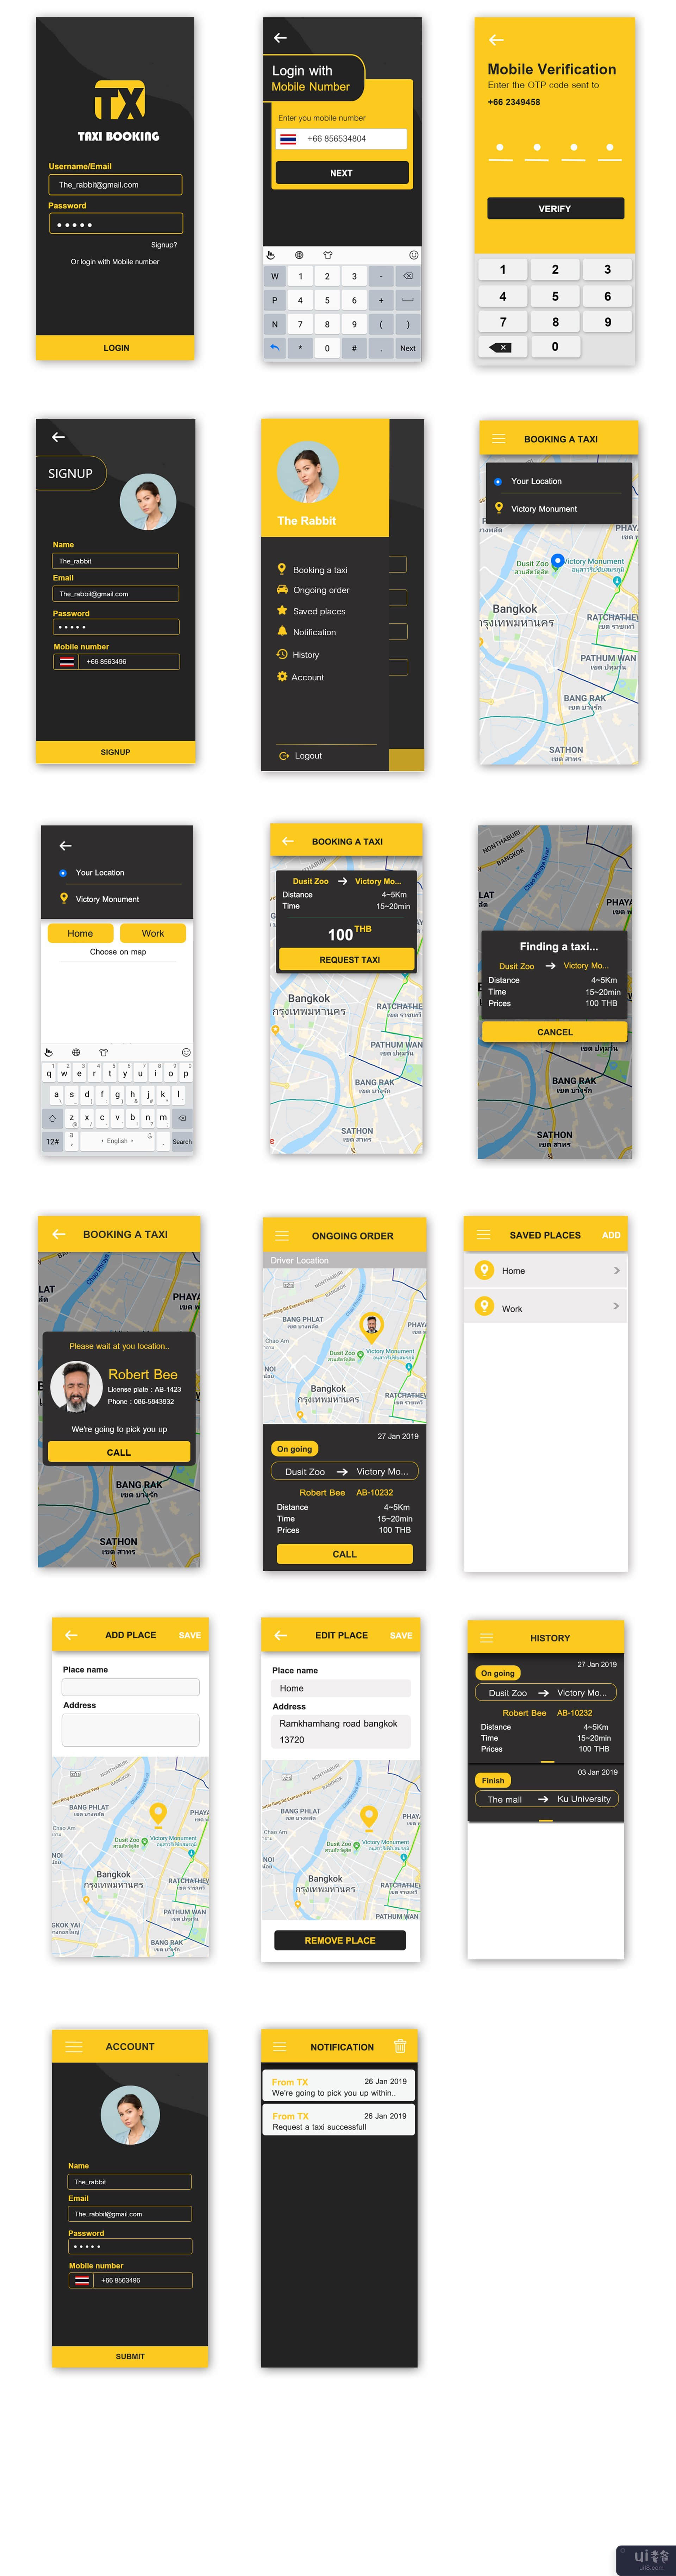 预订出租车 ui 套件(Booking a taxi ui kit)插图